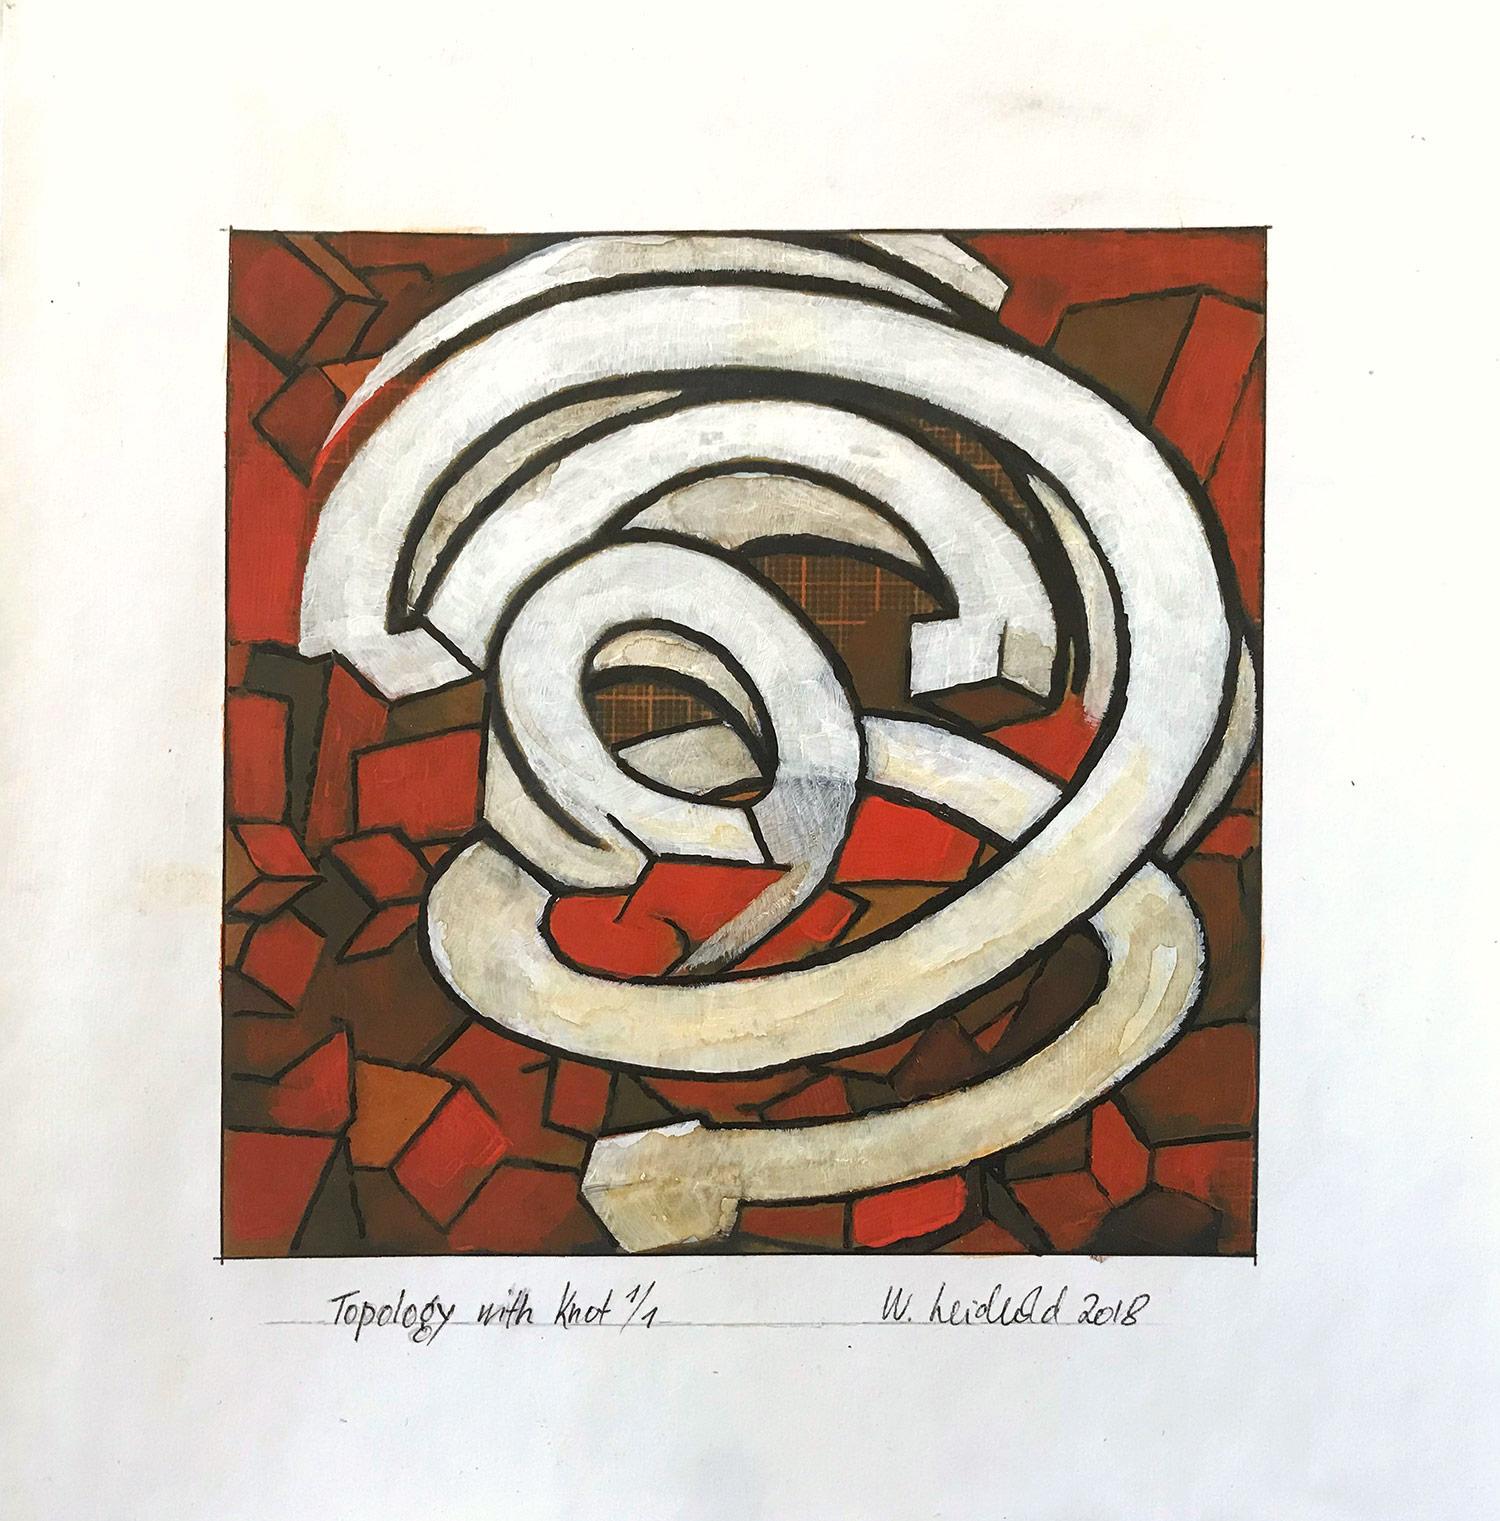 "Topology with Knot 1/1" Peinture figurative abstraite représentant un nœud sur papier